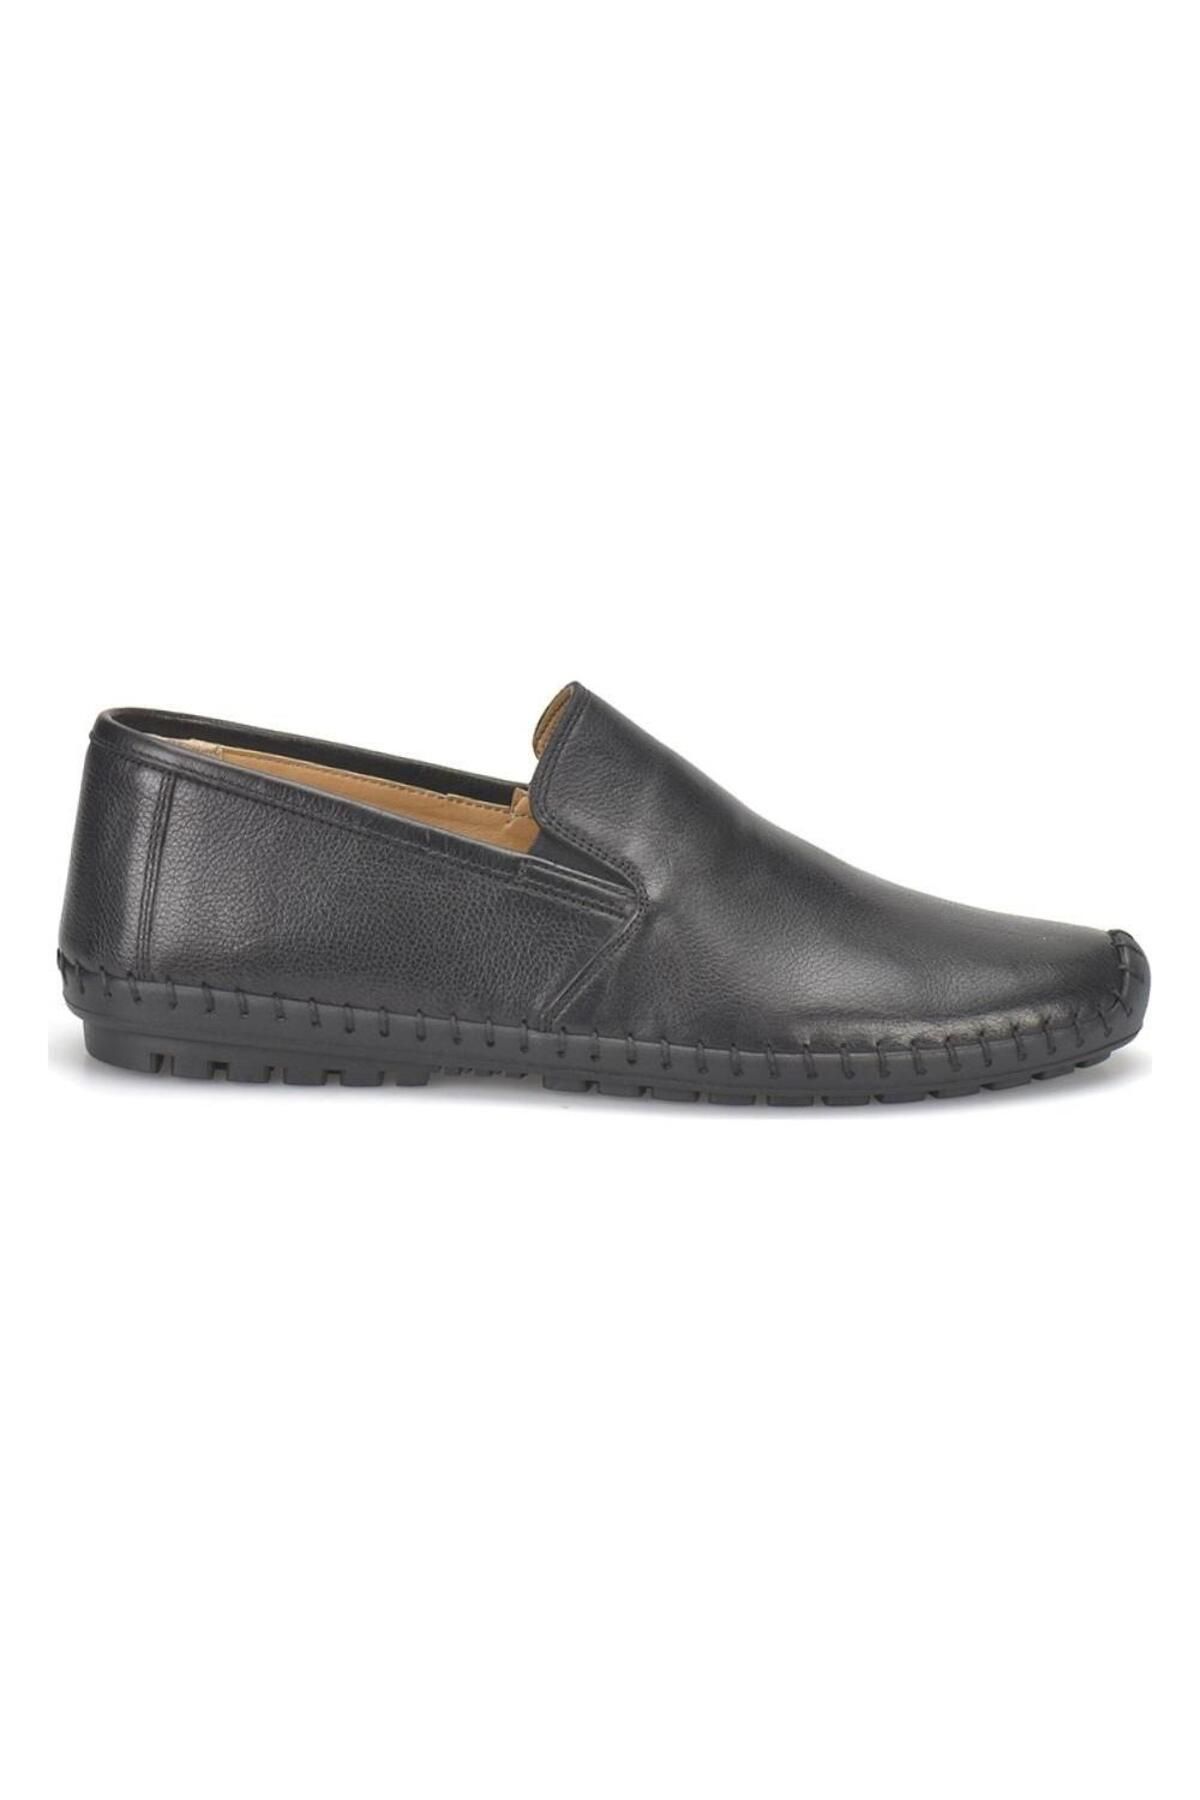 Flogart G88 1455 Hakiki Deri Casual Confort Erkek Günlük Ayakkabısı